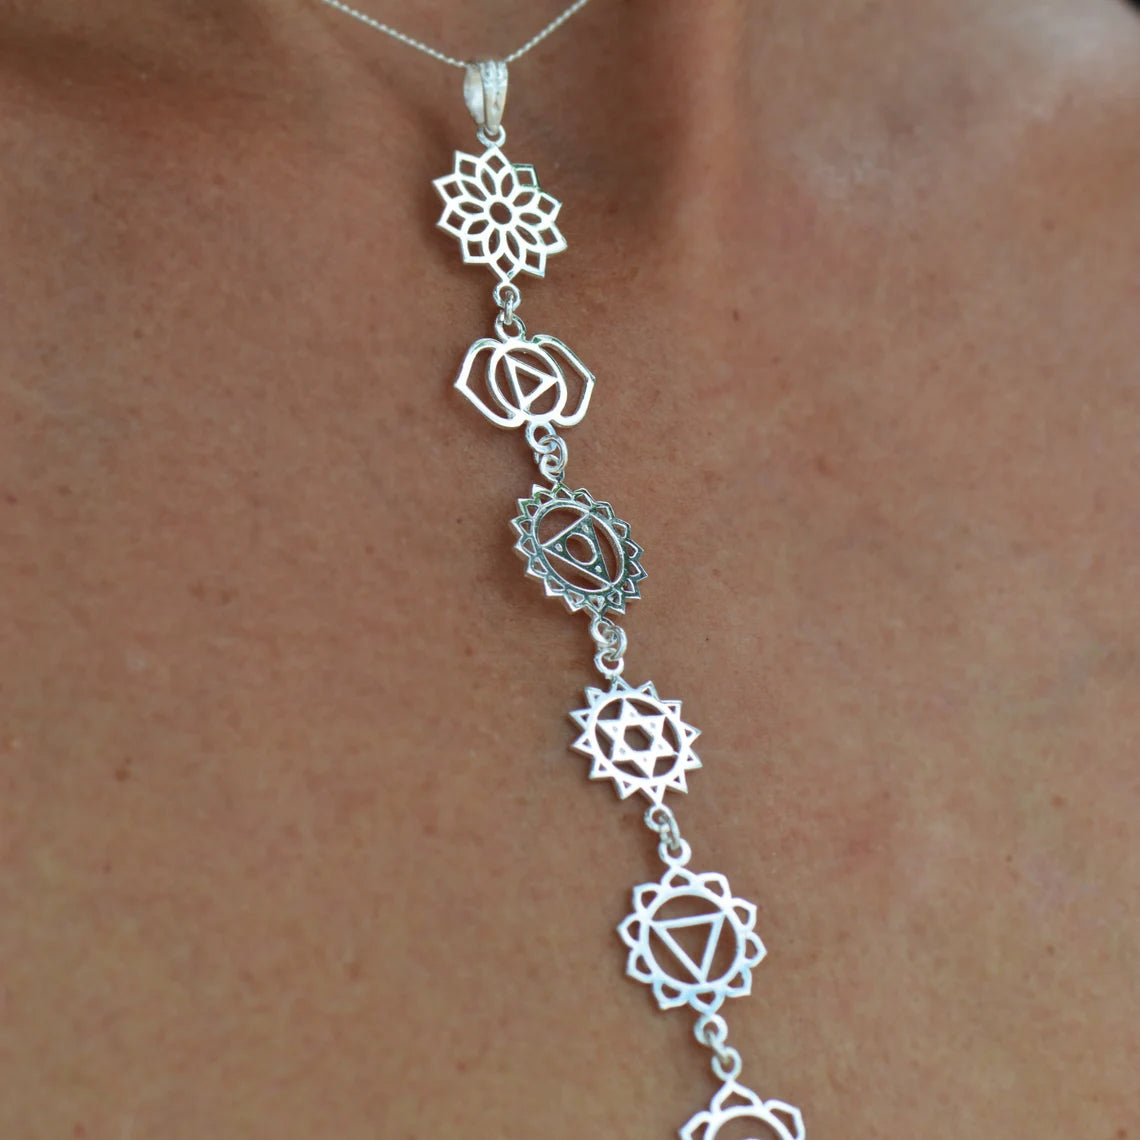 Chakra Pendant Necklace – Talisman Jewelry